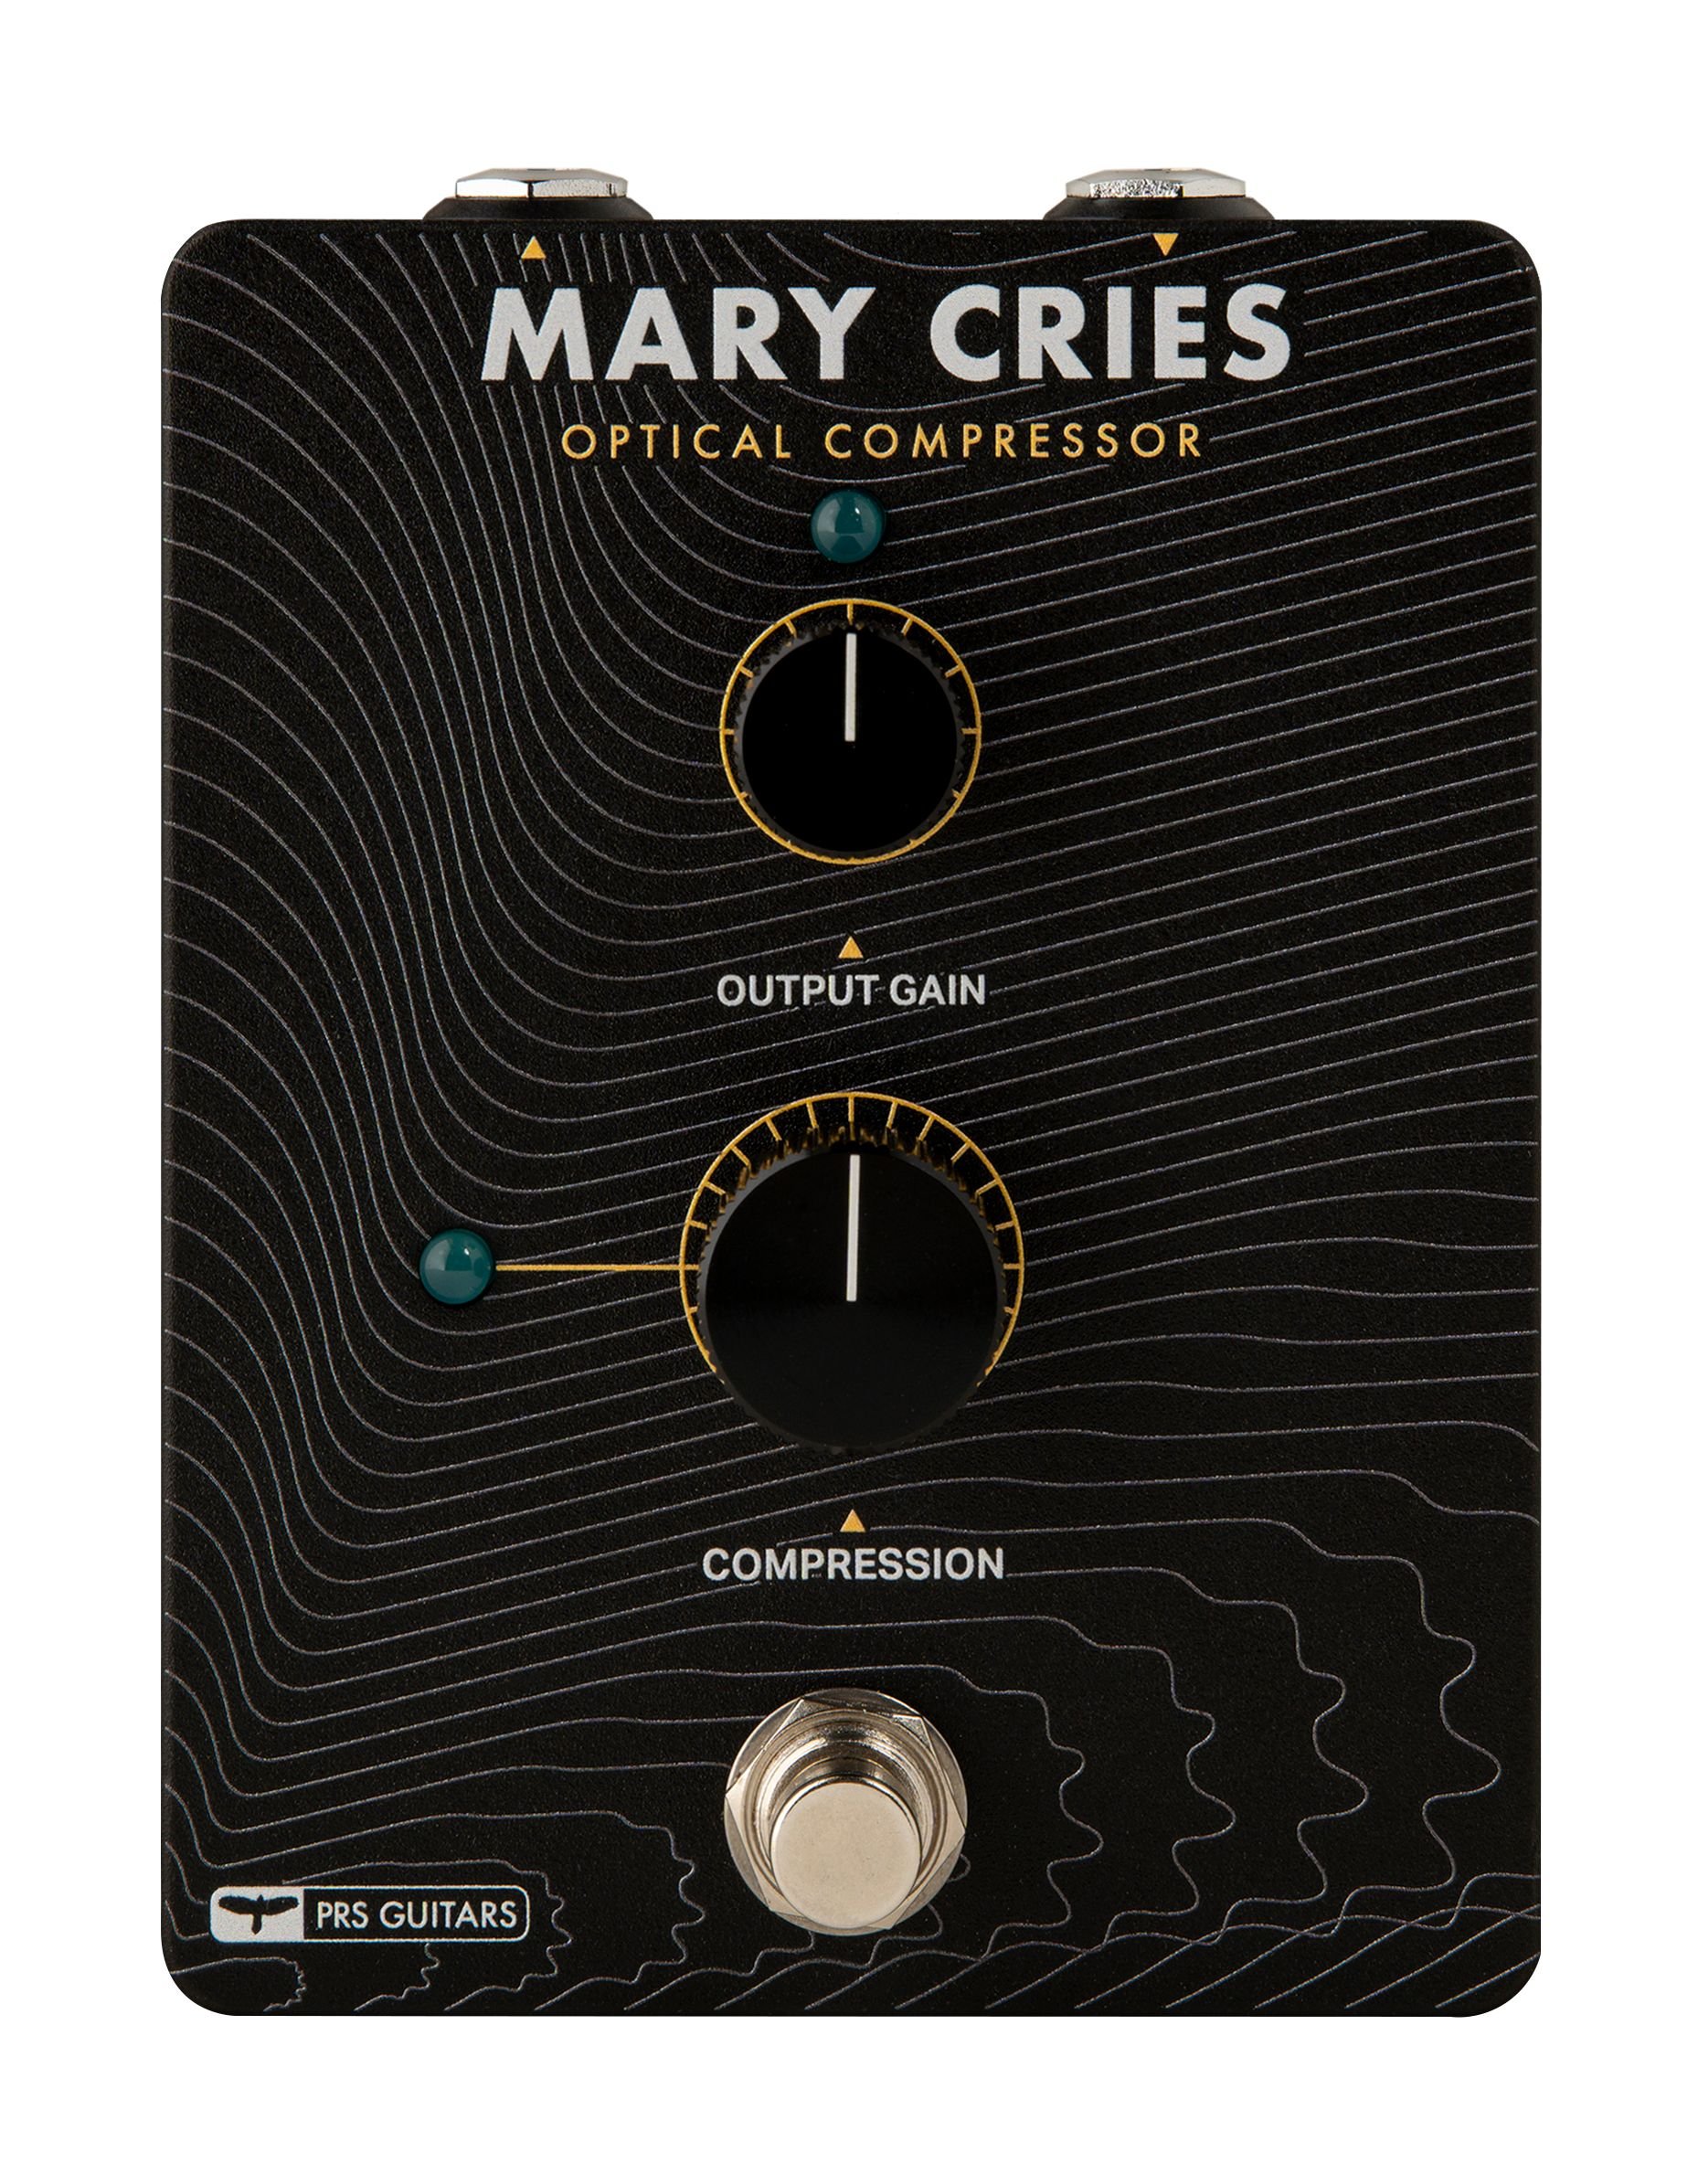  Bitte auf das Bild klicken um weitere Informationen zu erhalten  Mary Cries  unverbindliche Preisempfehlung:  279,—€ 